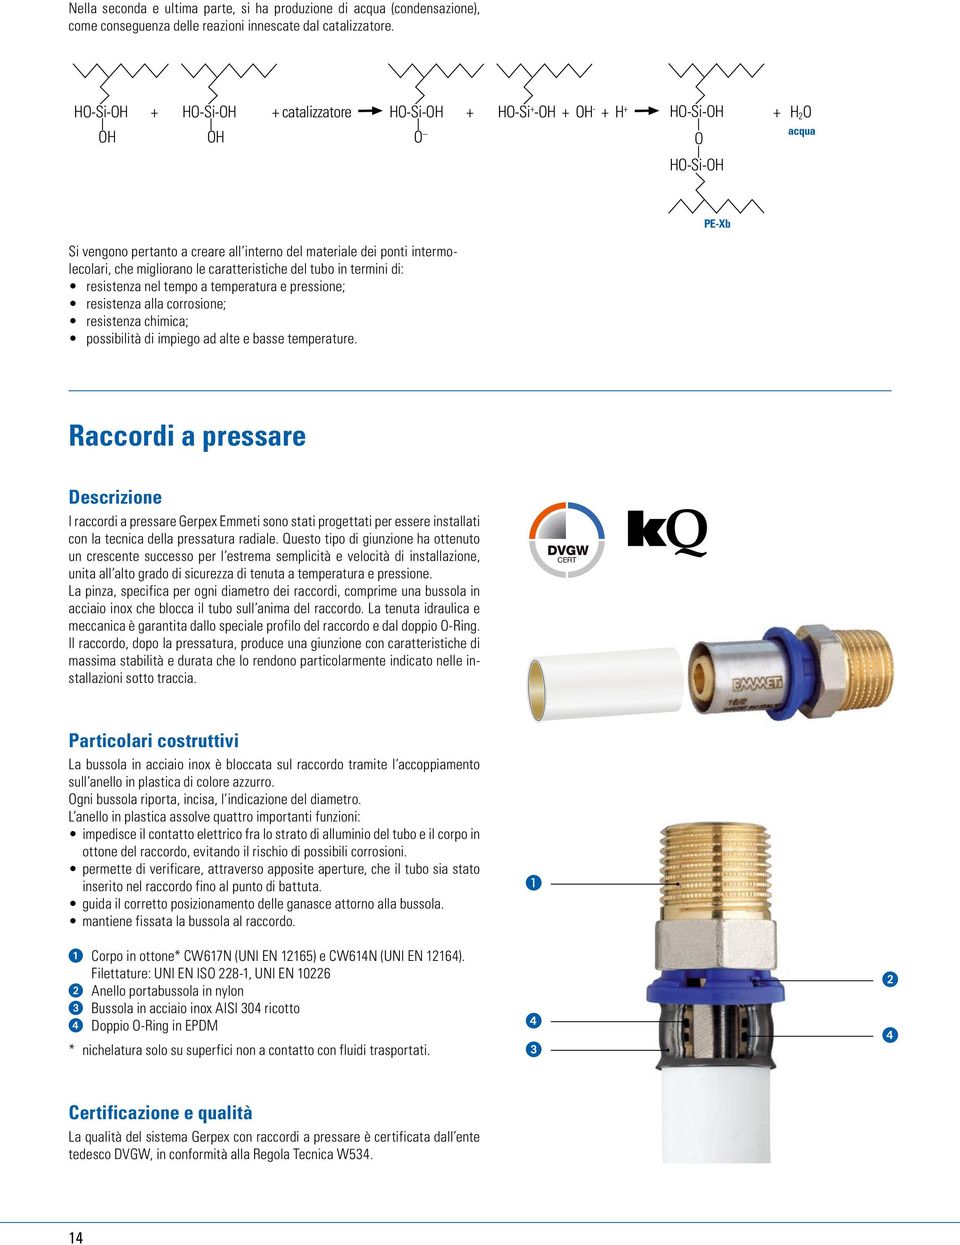 intermolecolari, che migliorano le caratteristiche del tubo in termini di: resistenza nel tempo a temperatura e pressione; resistenza alla corrosione; resistenza chimica; possibilità di impiego ad